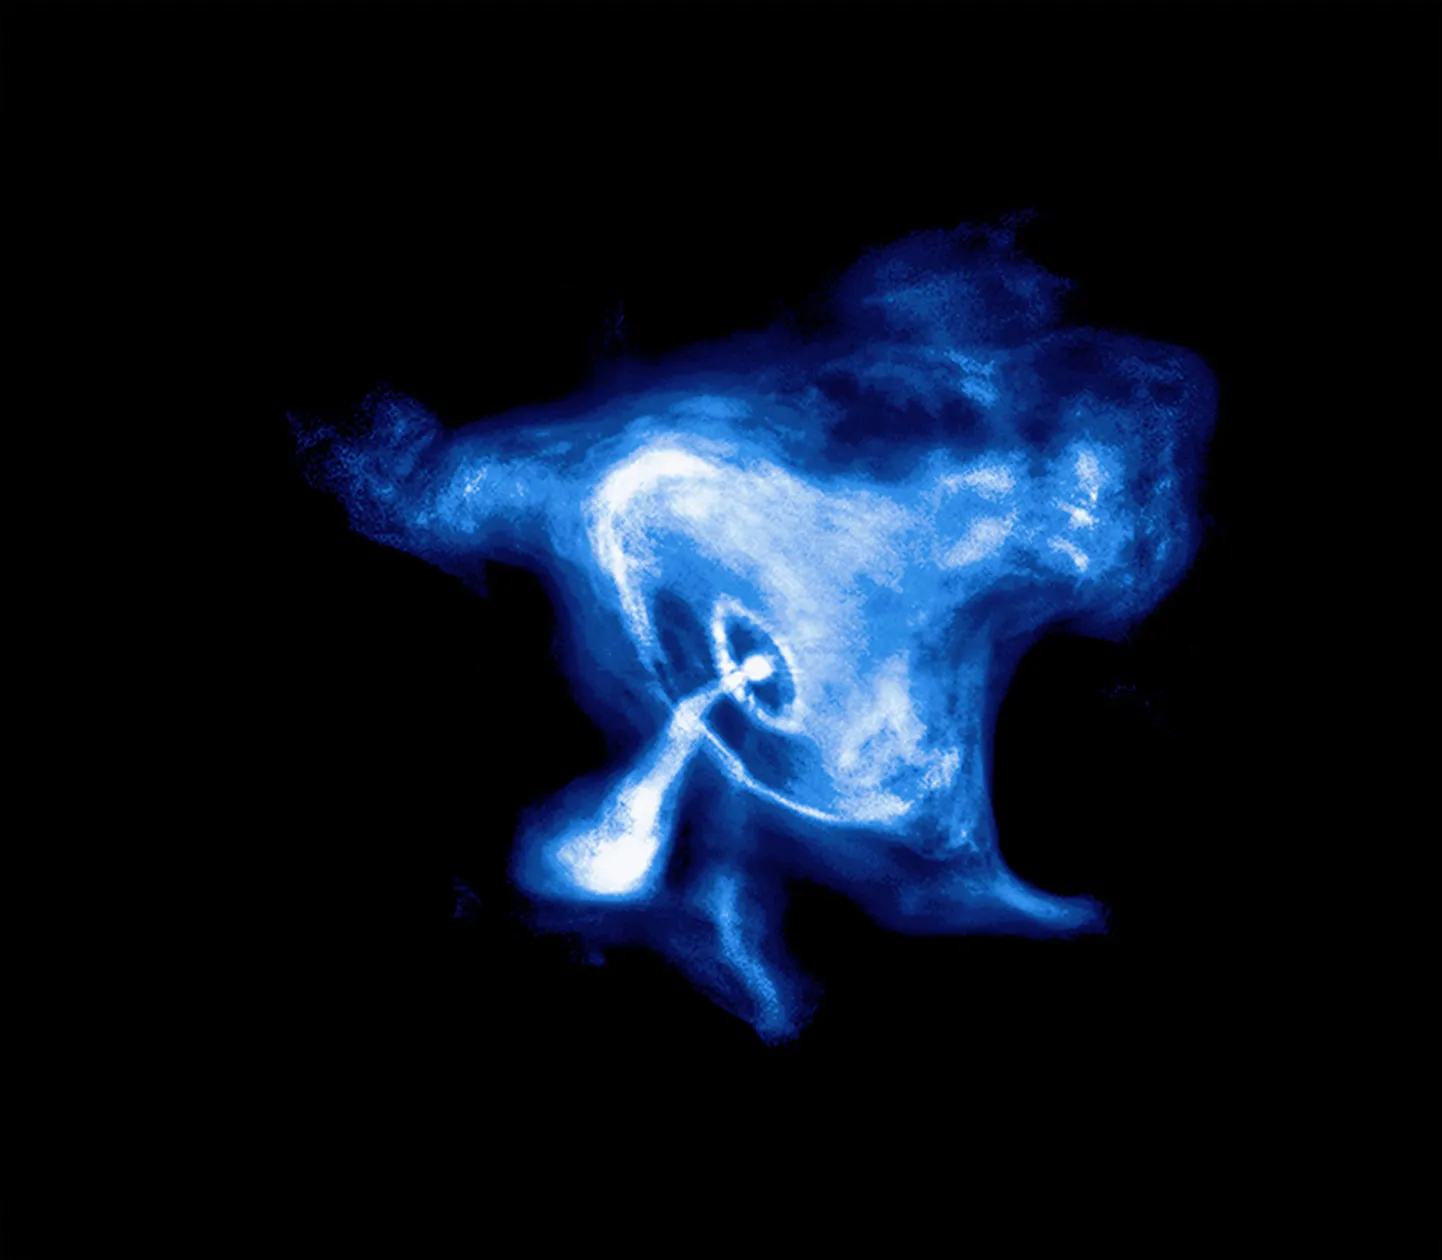 Üks meile lähimaid neutrontähti asub Krabi udus, mis tekkis 6500 valgusaasta kaugusel supernoova plahvatusest ja mille sähvatus jõudis Maale 1054. aastal. Raadiosignaale läkitav Krabi pulsar seal keskel käitub aga hoopis teistmoodi, kui see salapärane allikas, mida teadlased nüüd uurivad ja millele nad ei oska veel seletust anda.